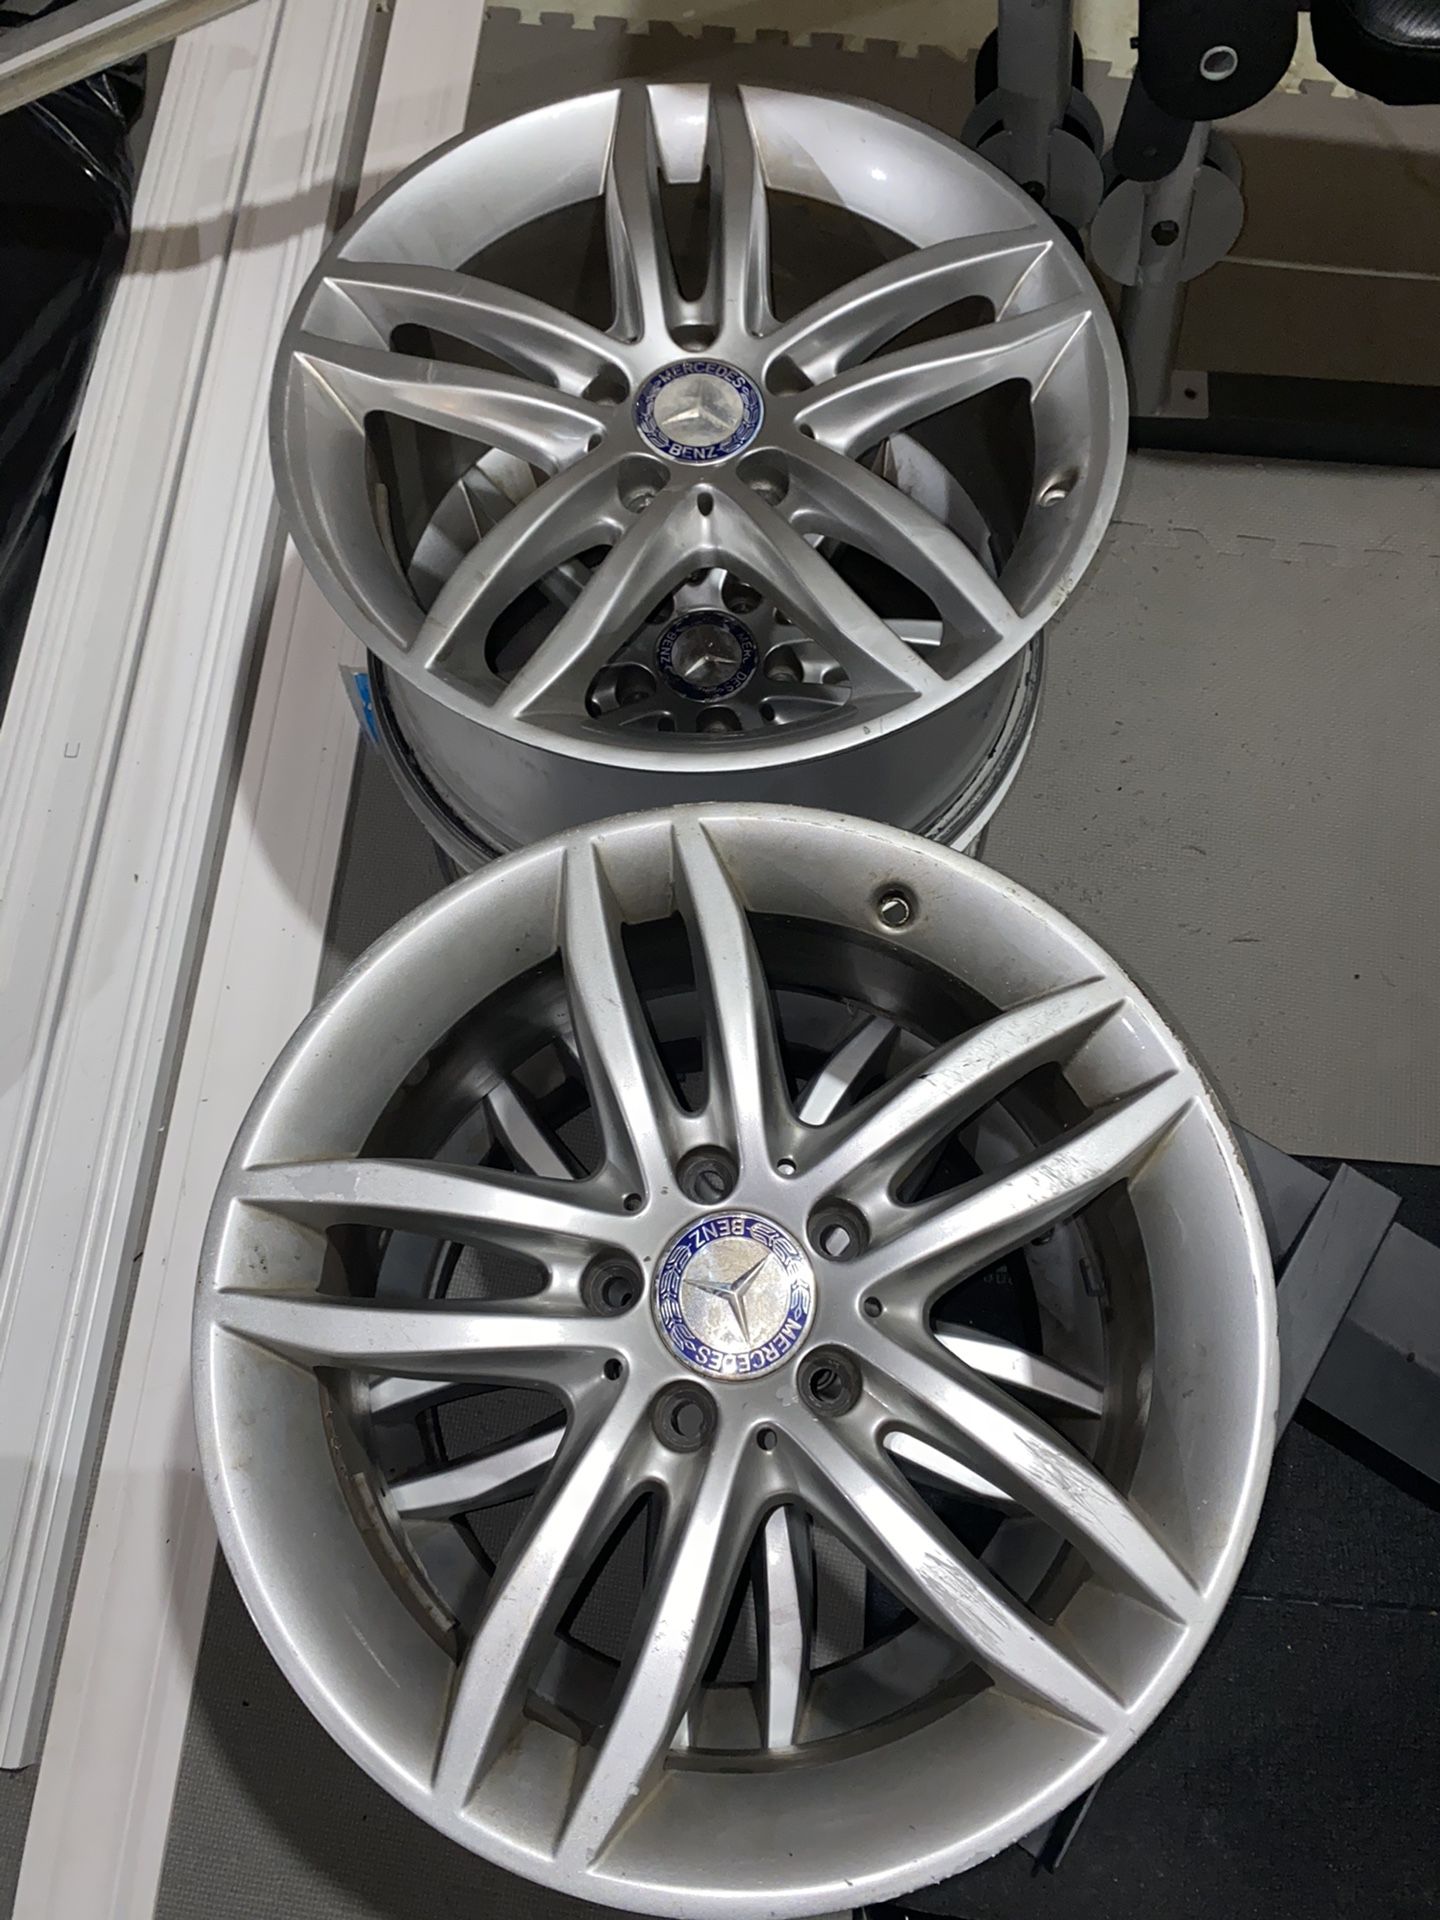 Mercedes Benz sport wheel 17” 5x112 bolt pattern